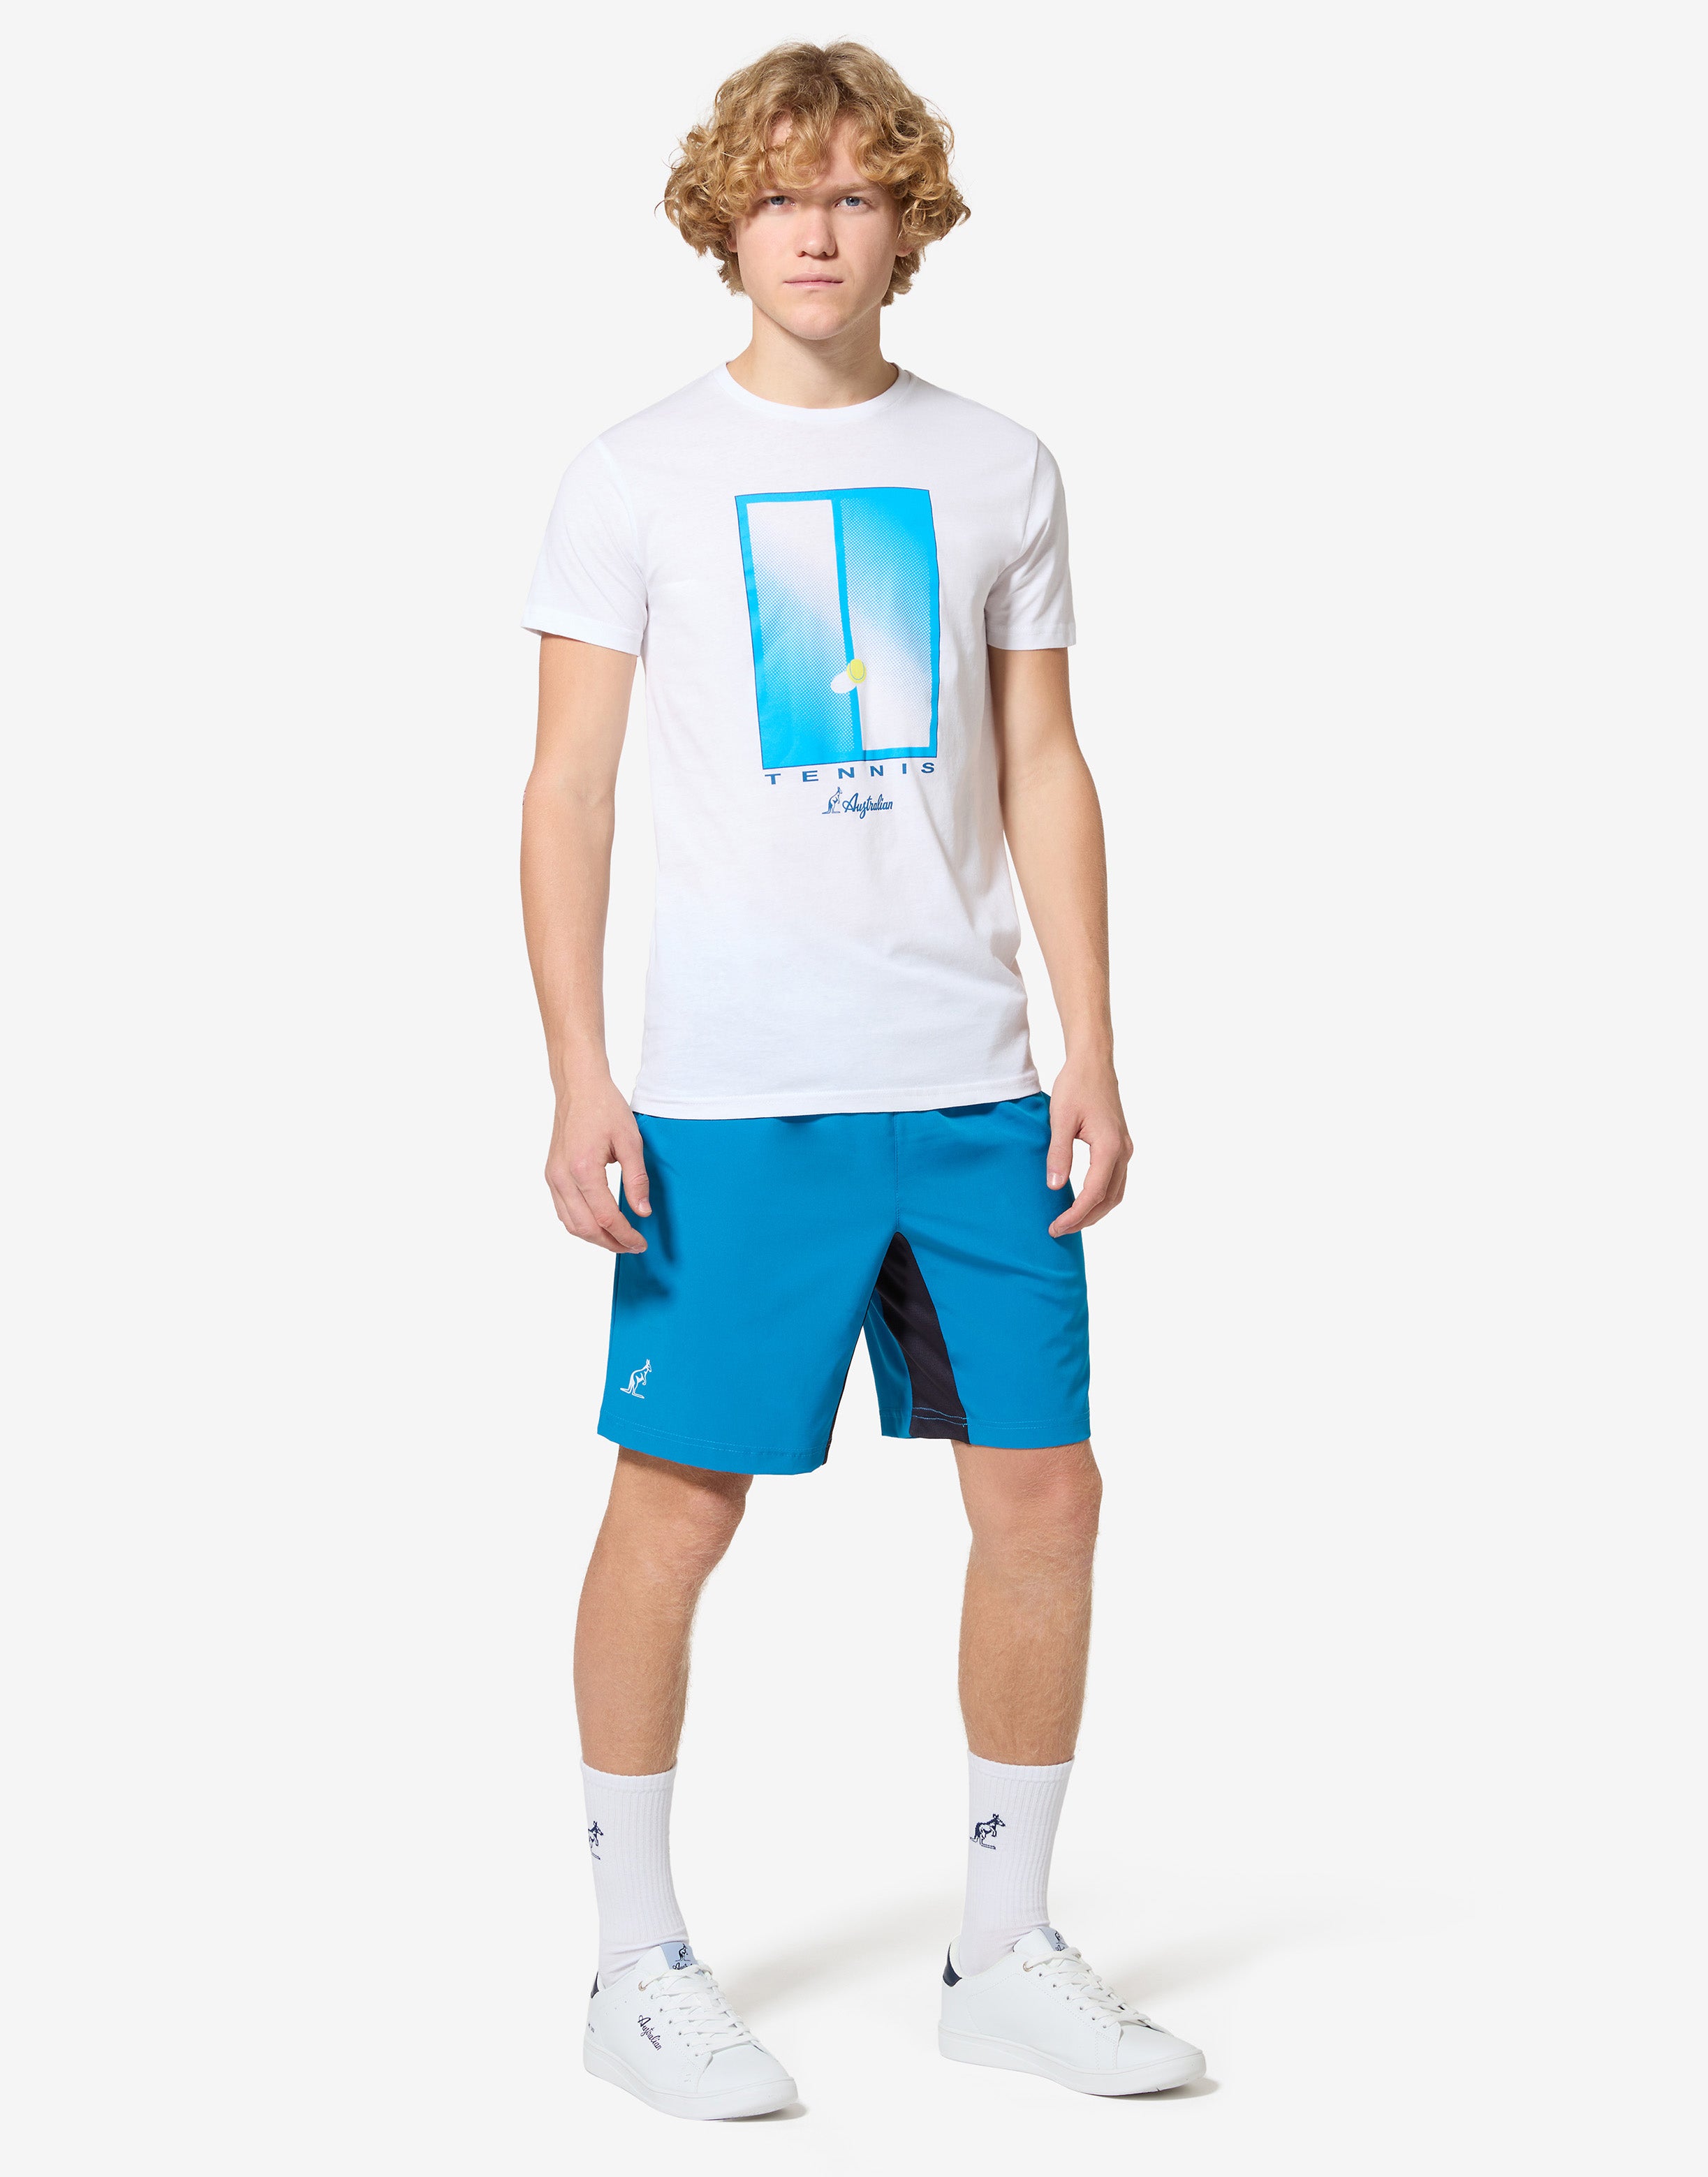 Abstract Court T-shirt: Australian Tennis